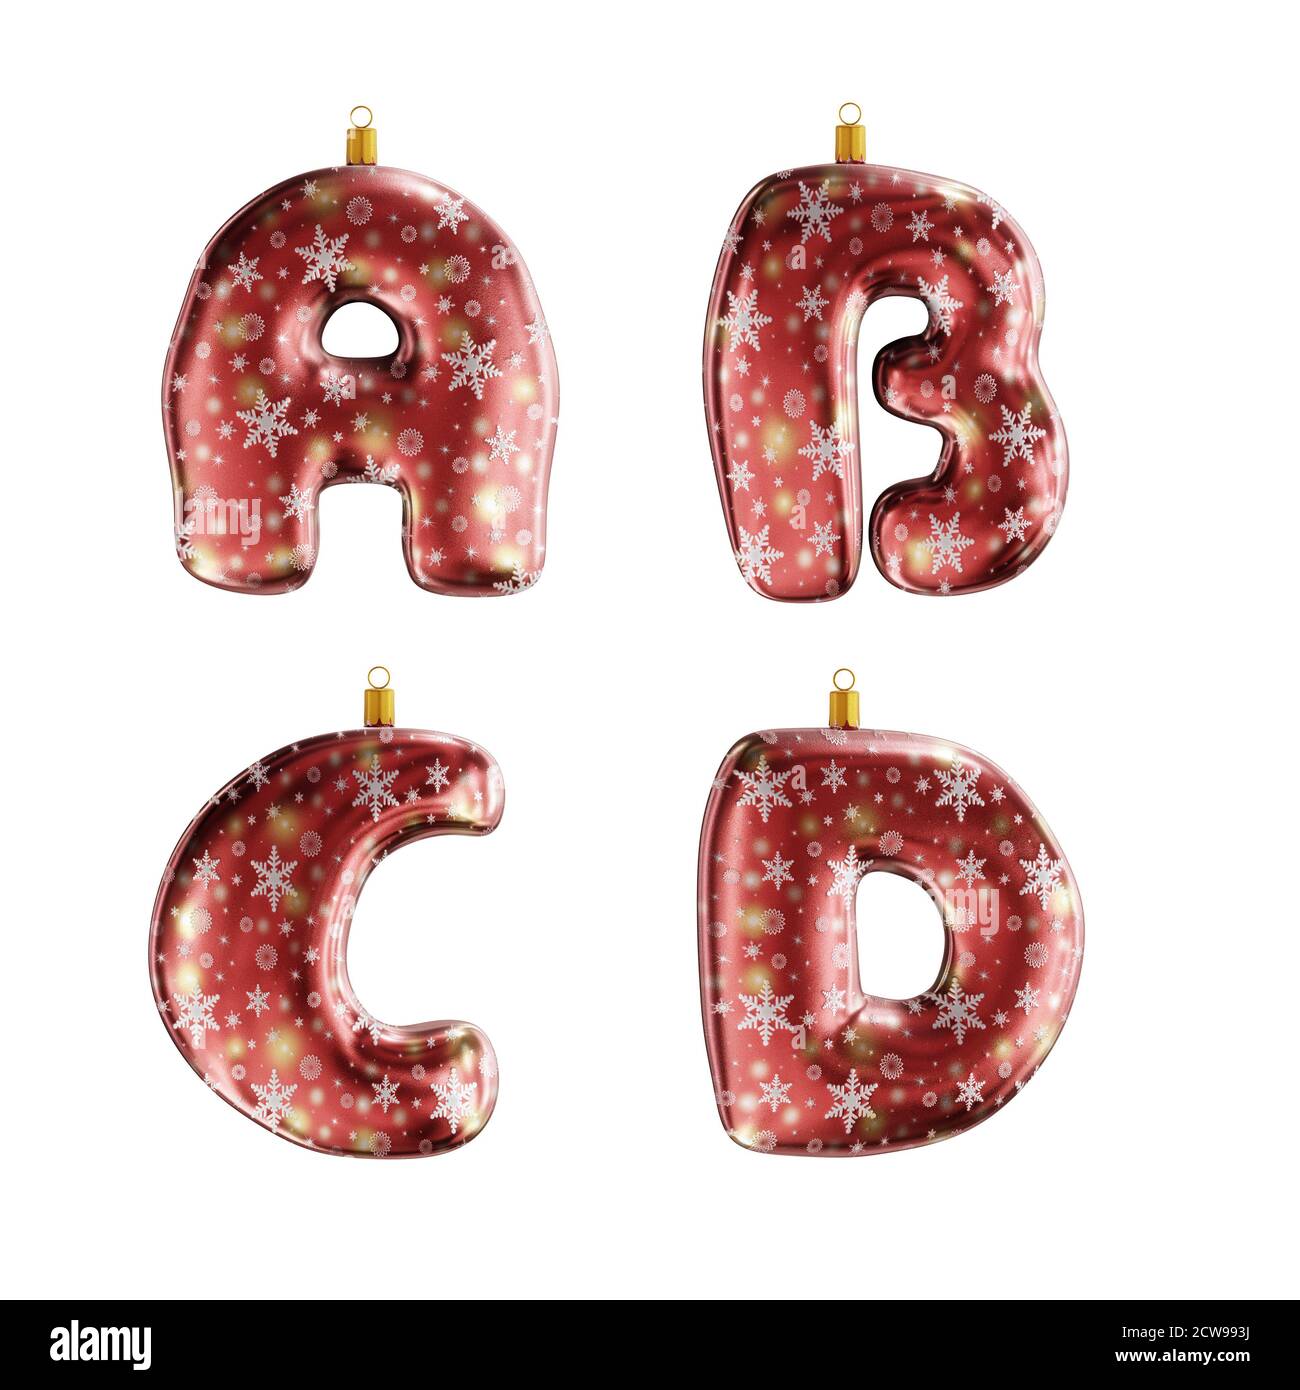 3D-Rendering von roten weihnachtsschmuck Alphabet auf weiß geschossen - Buchstaben E-H Stockfoto